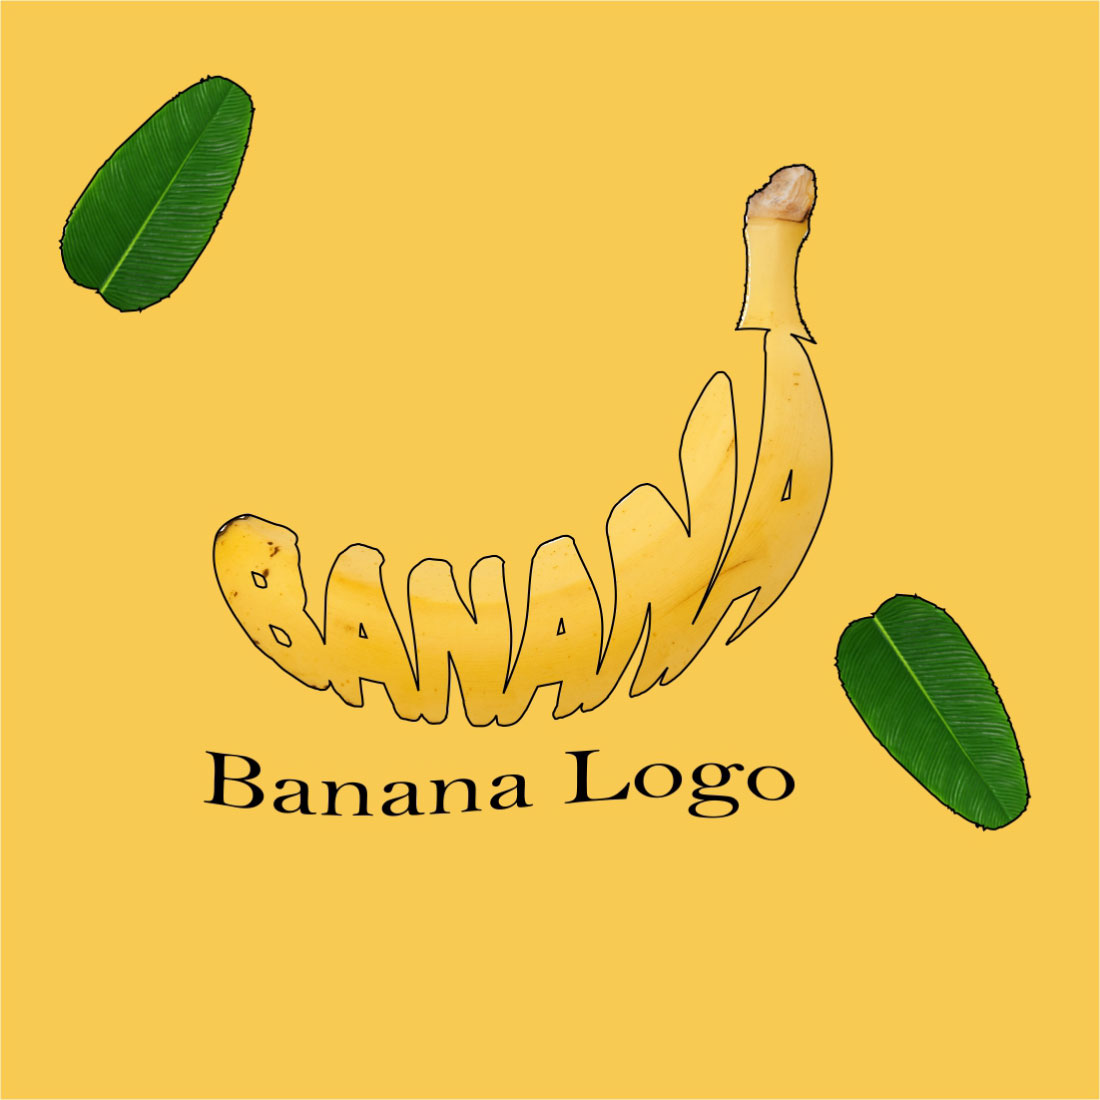 Bana Logo Vector Design cover image.